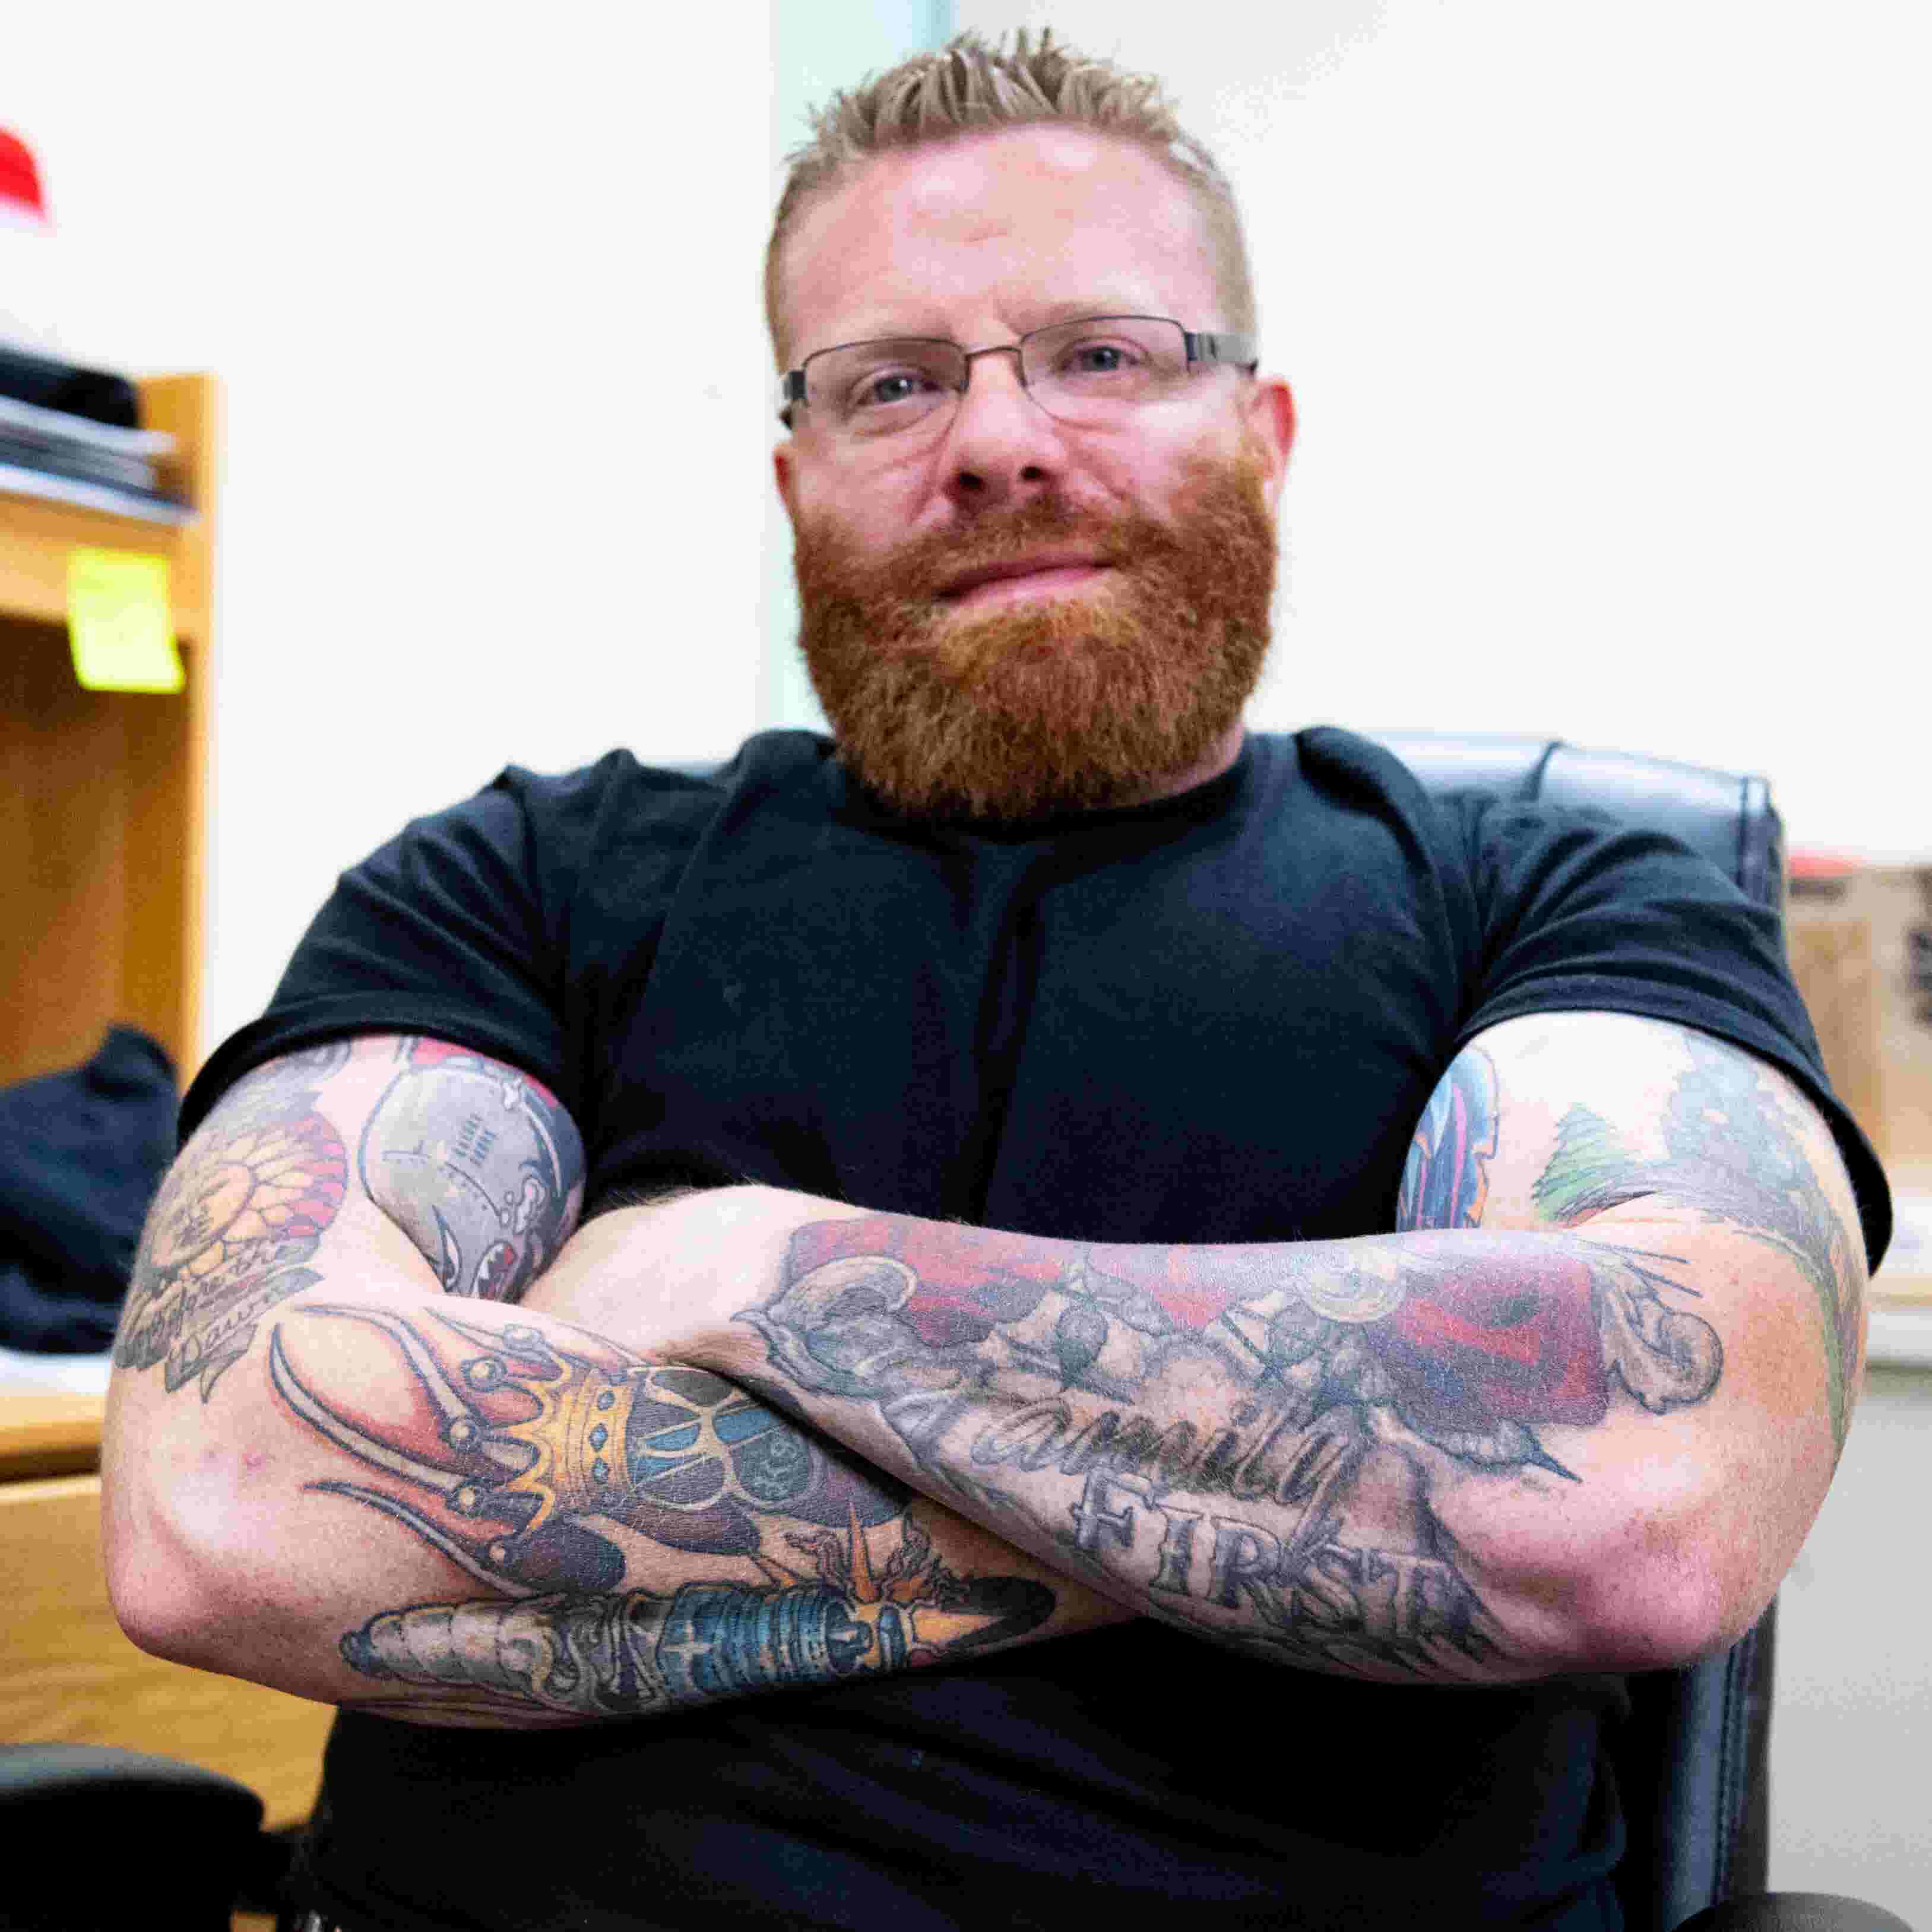 Tattoo Breakdown West York Police Officer Talks Meaningful Ink